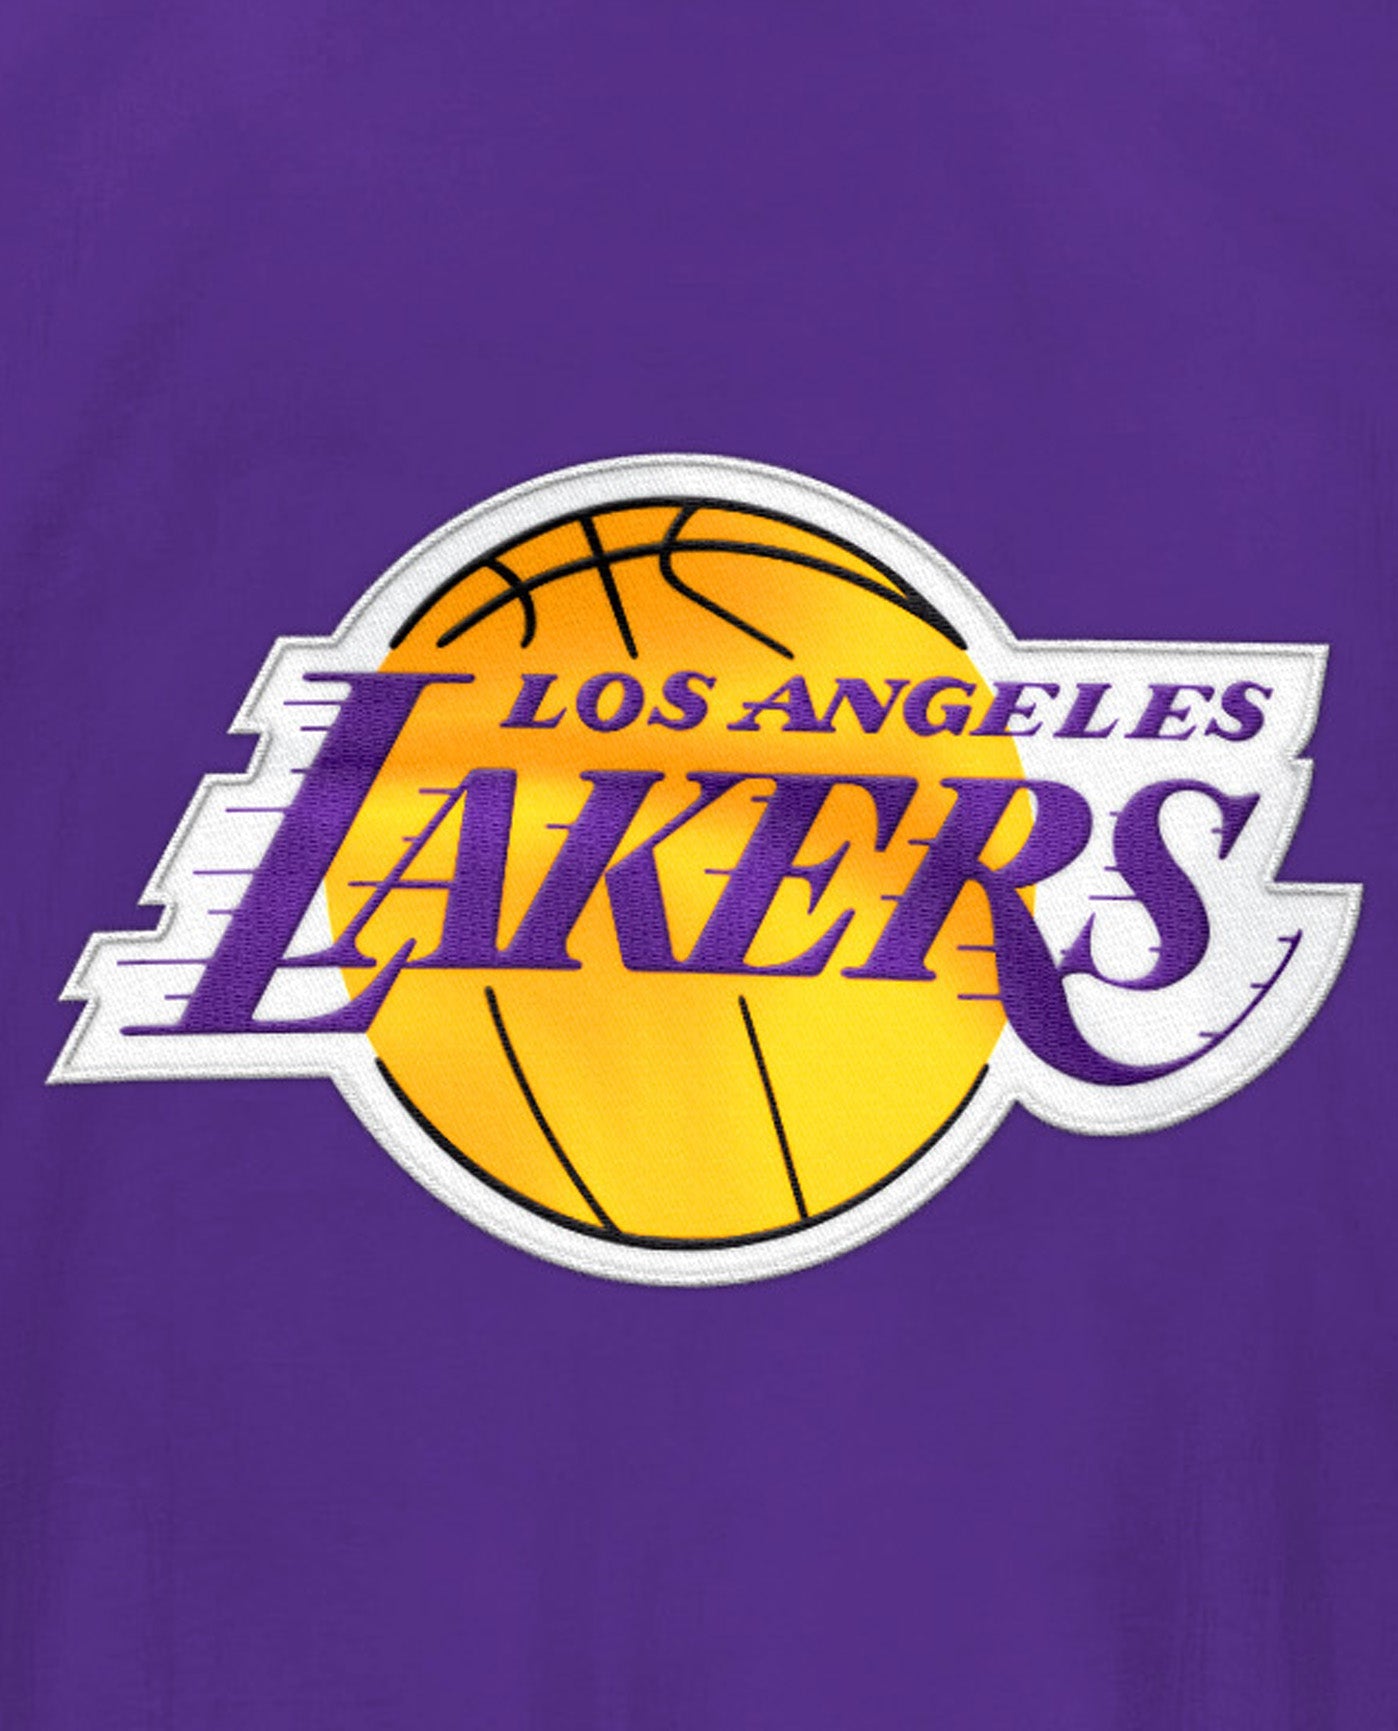 Men's Los Angeles Lakers Starter Purple The Star Vintage Full-Zip Jacket